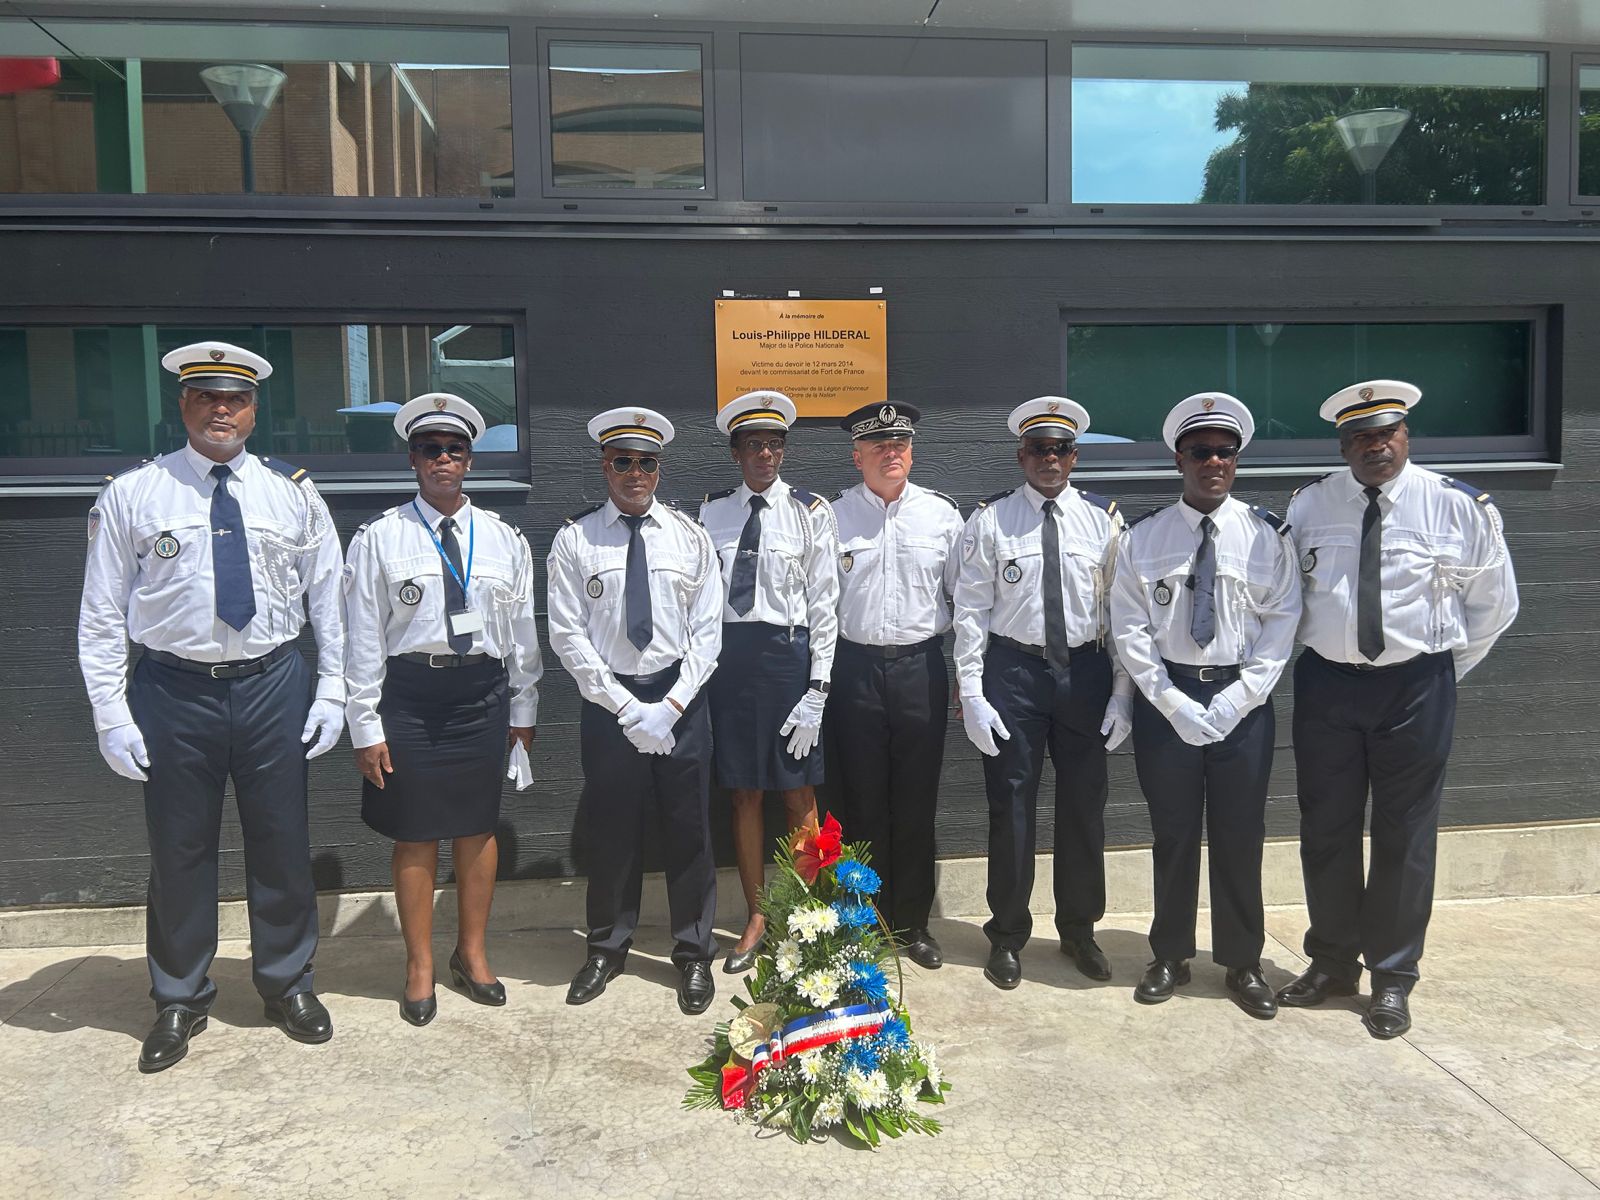     Les policiers de Martinique rendent hommage au major Louis-Philipe Hildéral au commissariat

